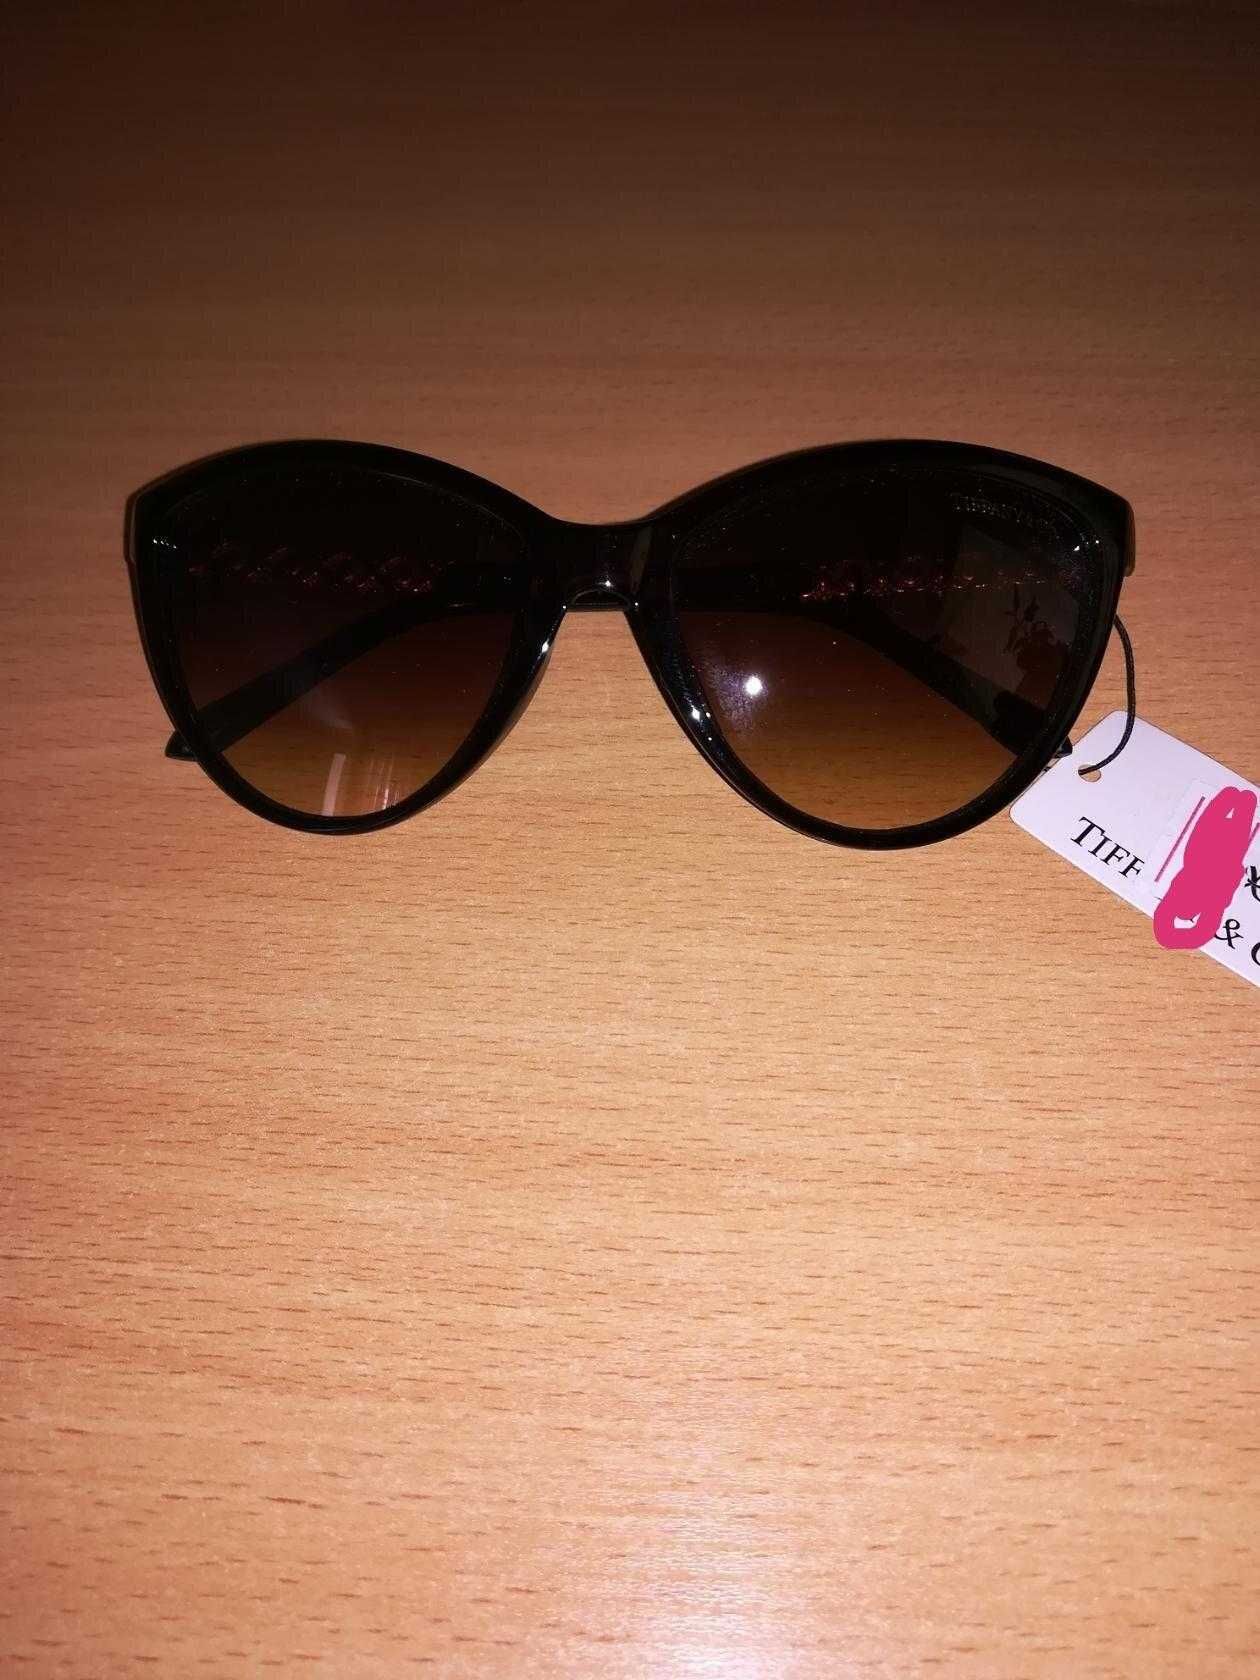 НОВЫЕ солнечные очки Tiffany коричневые со стразами